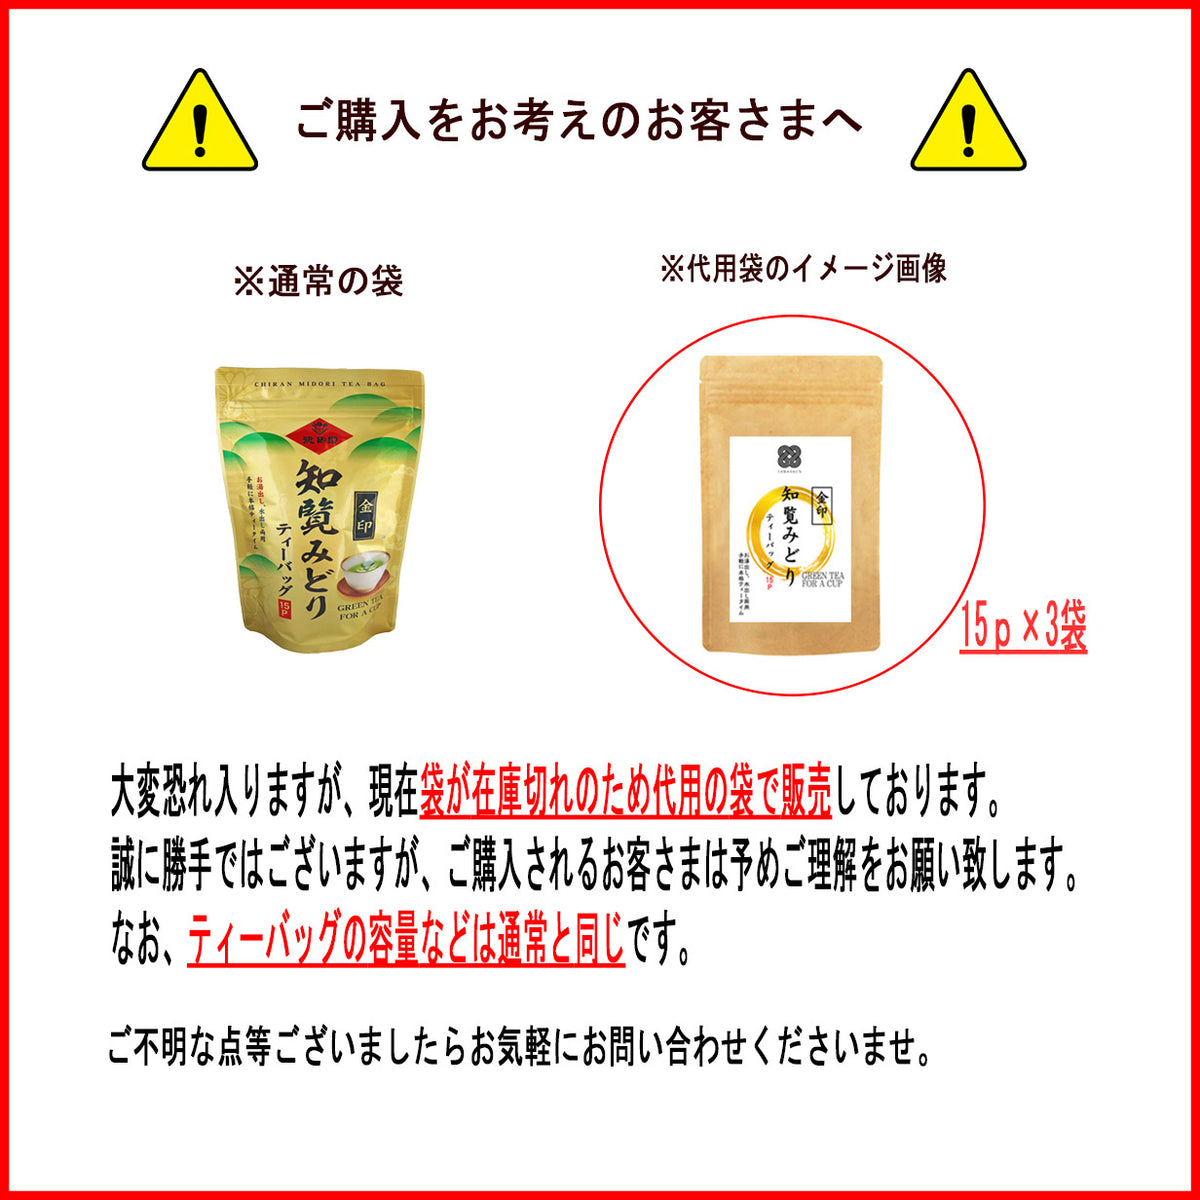 Chiran Midori Kinjirushi tea bag